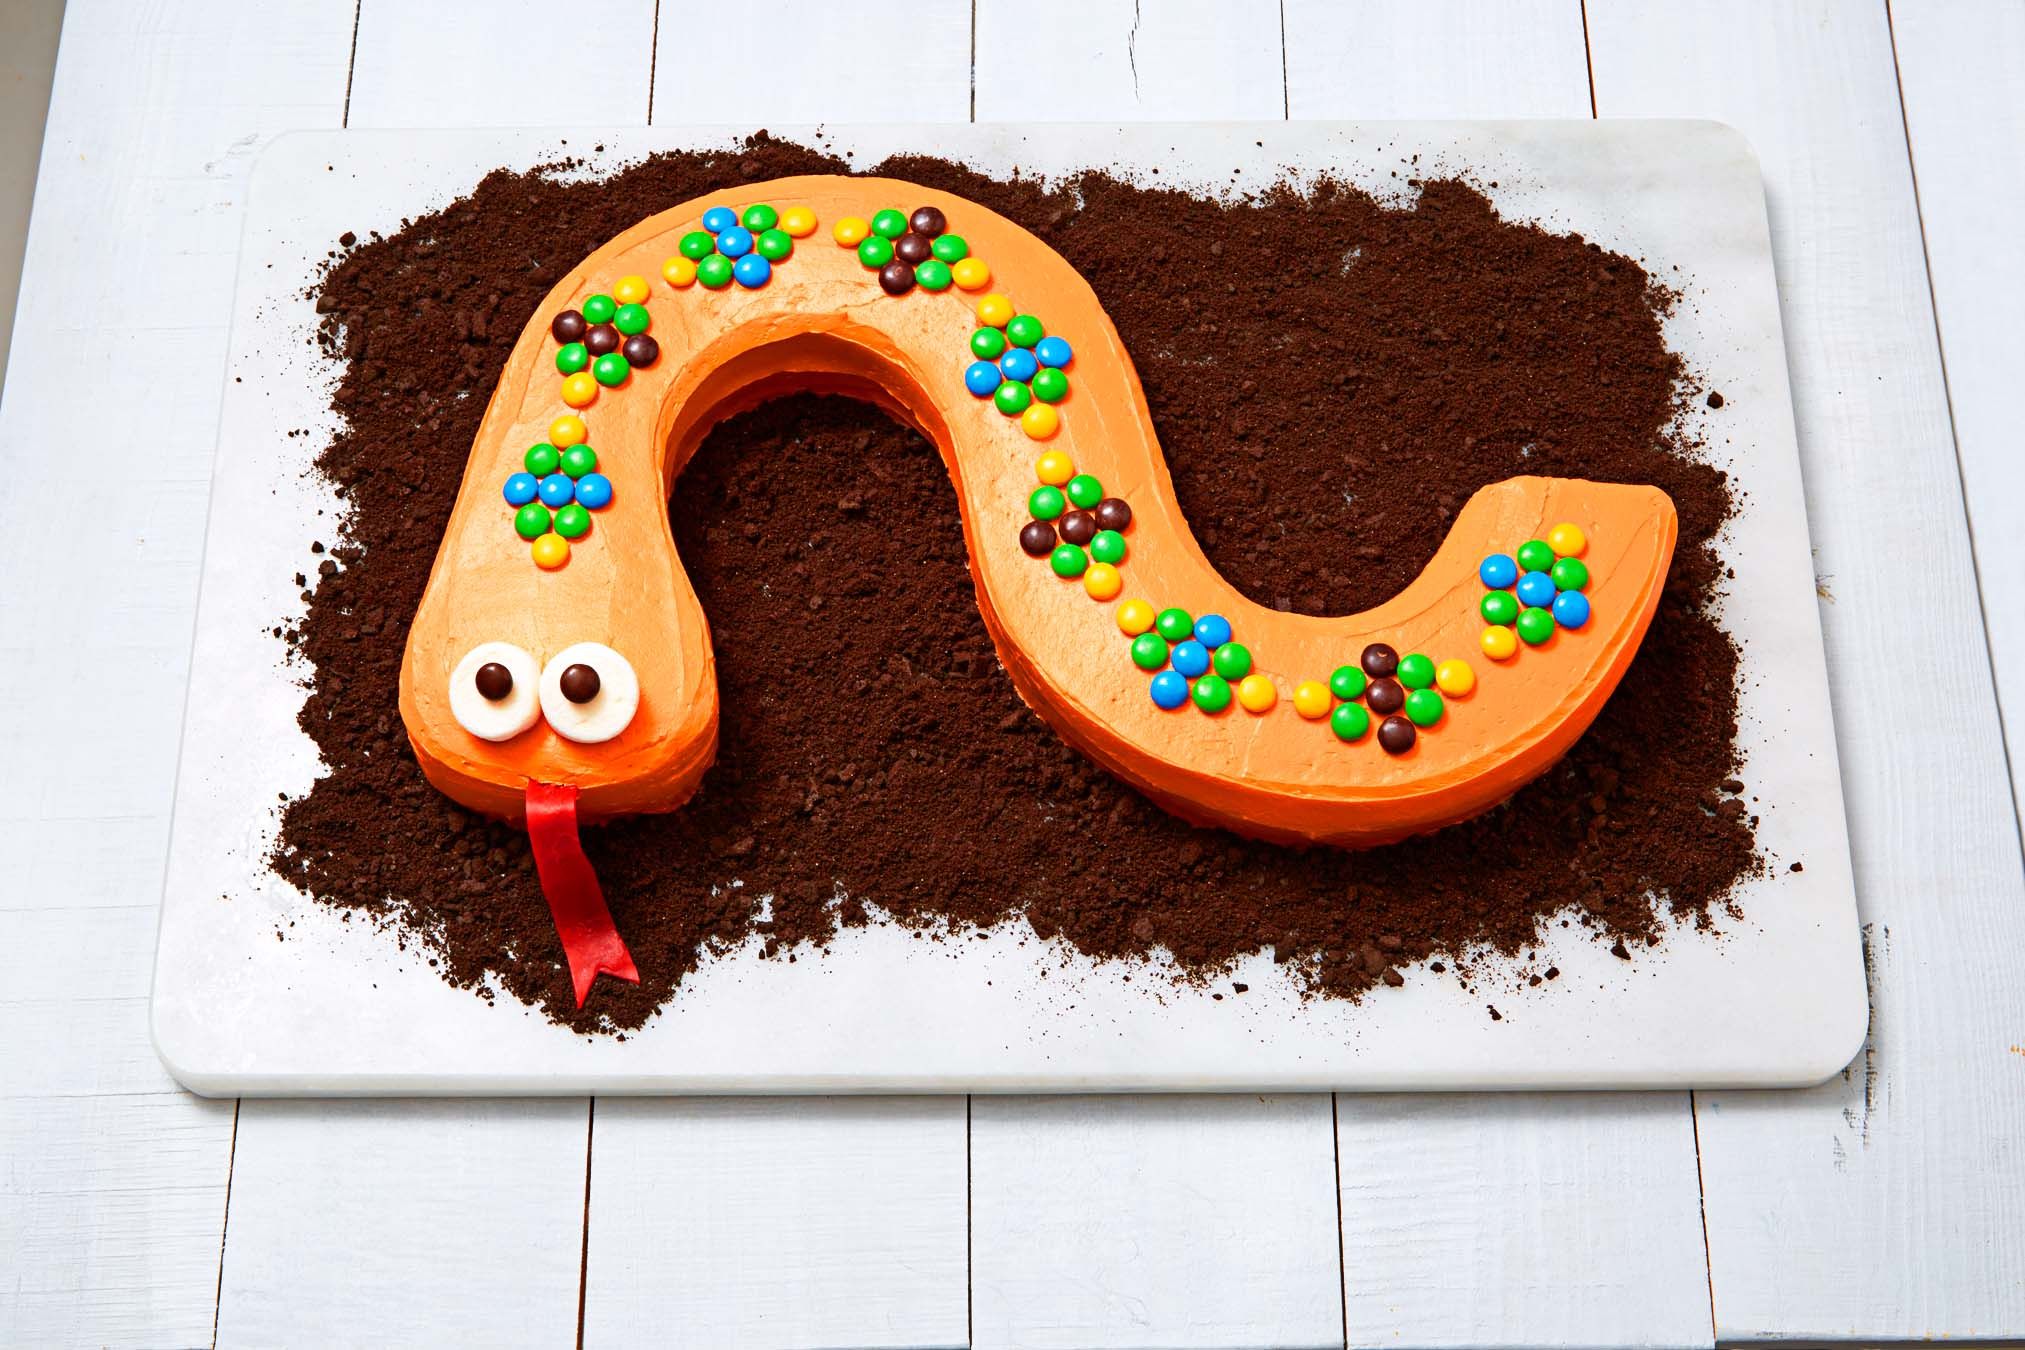 Snake Birthday Cake, snake cake design | Yummy cake